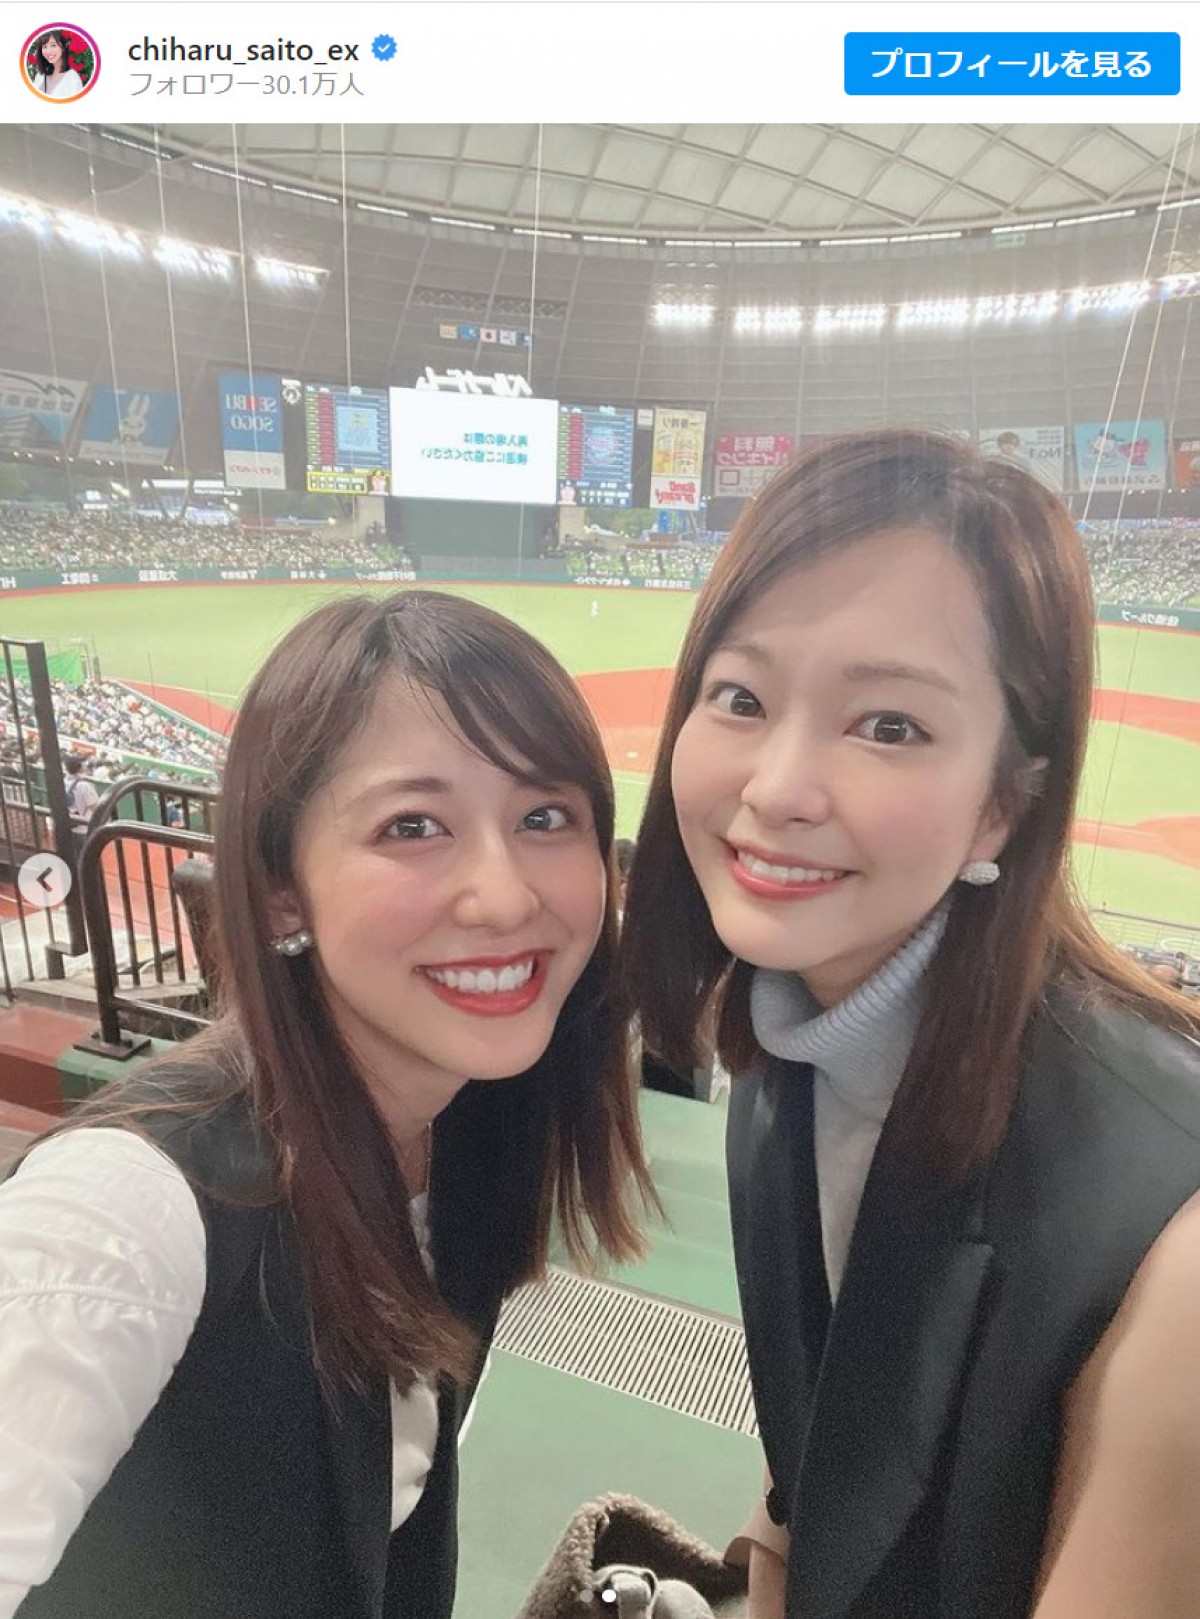 斎藤ちはるアナ、同期・下村彩里アナと偶然のペアルックで野球観戦を報告